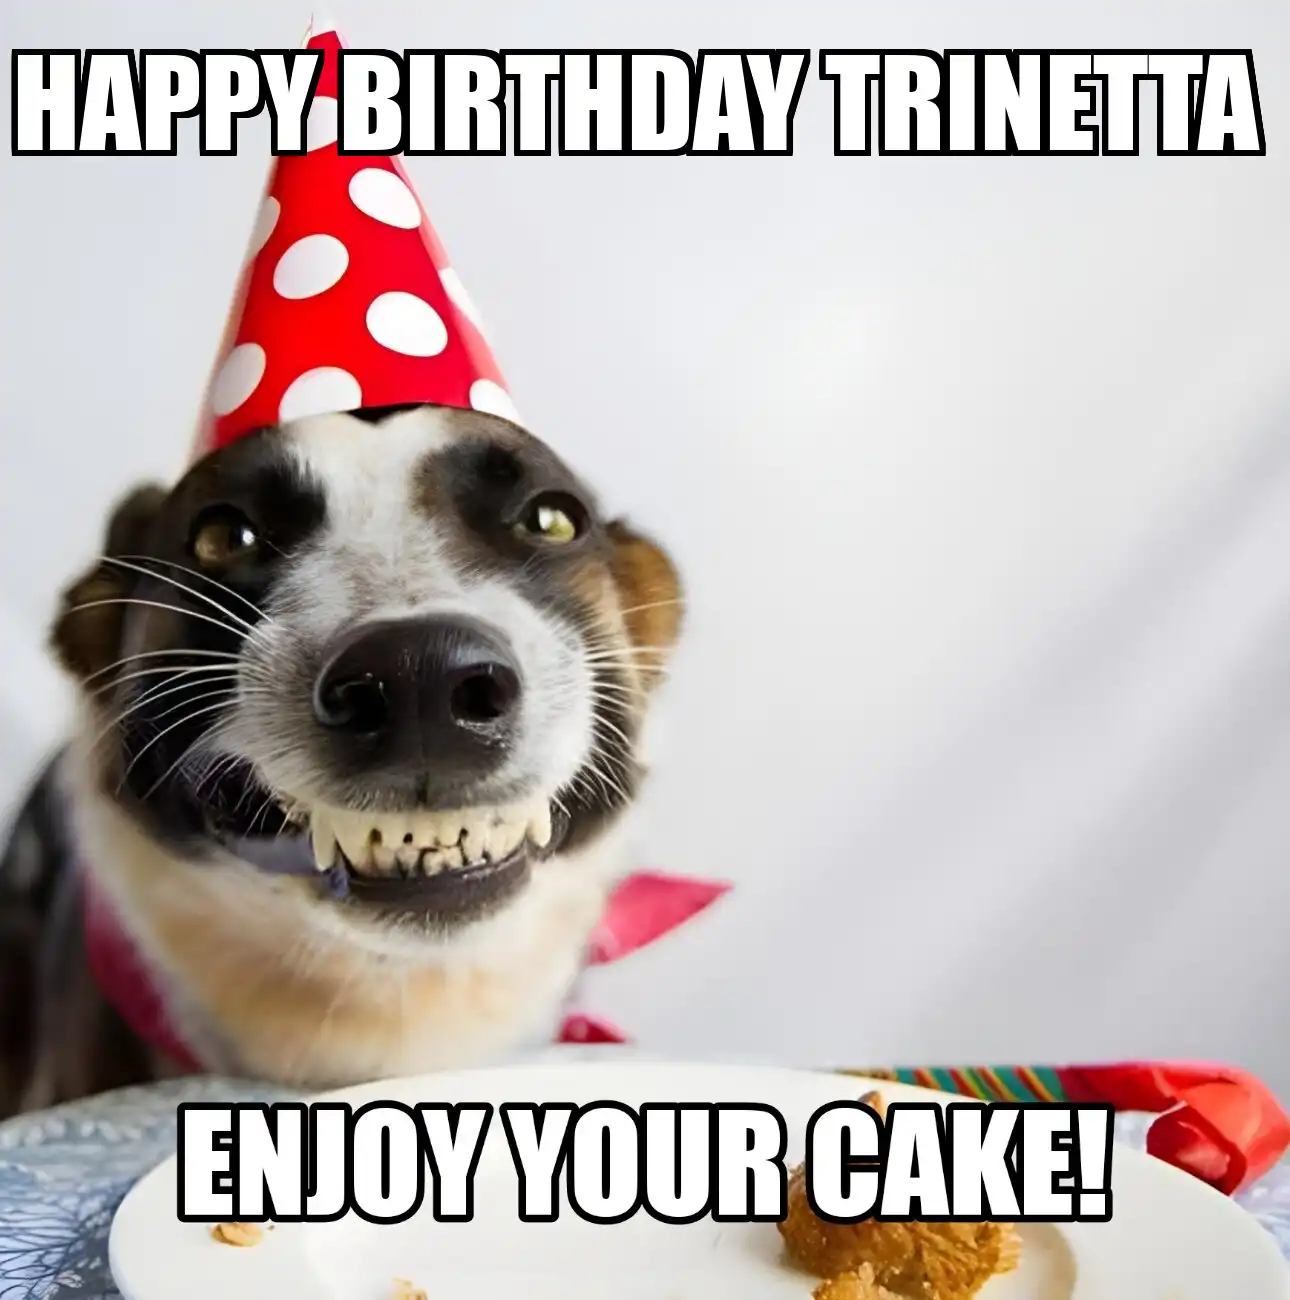 Happy Birthday Trinetta Enjoy Your Cake Dog Meme